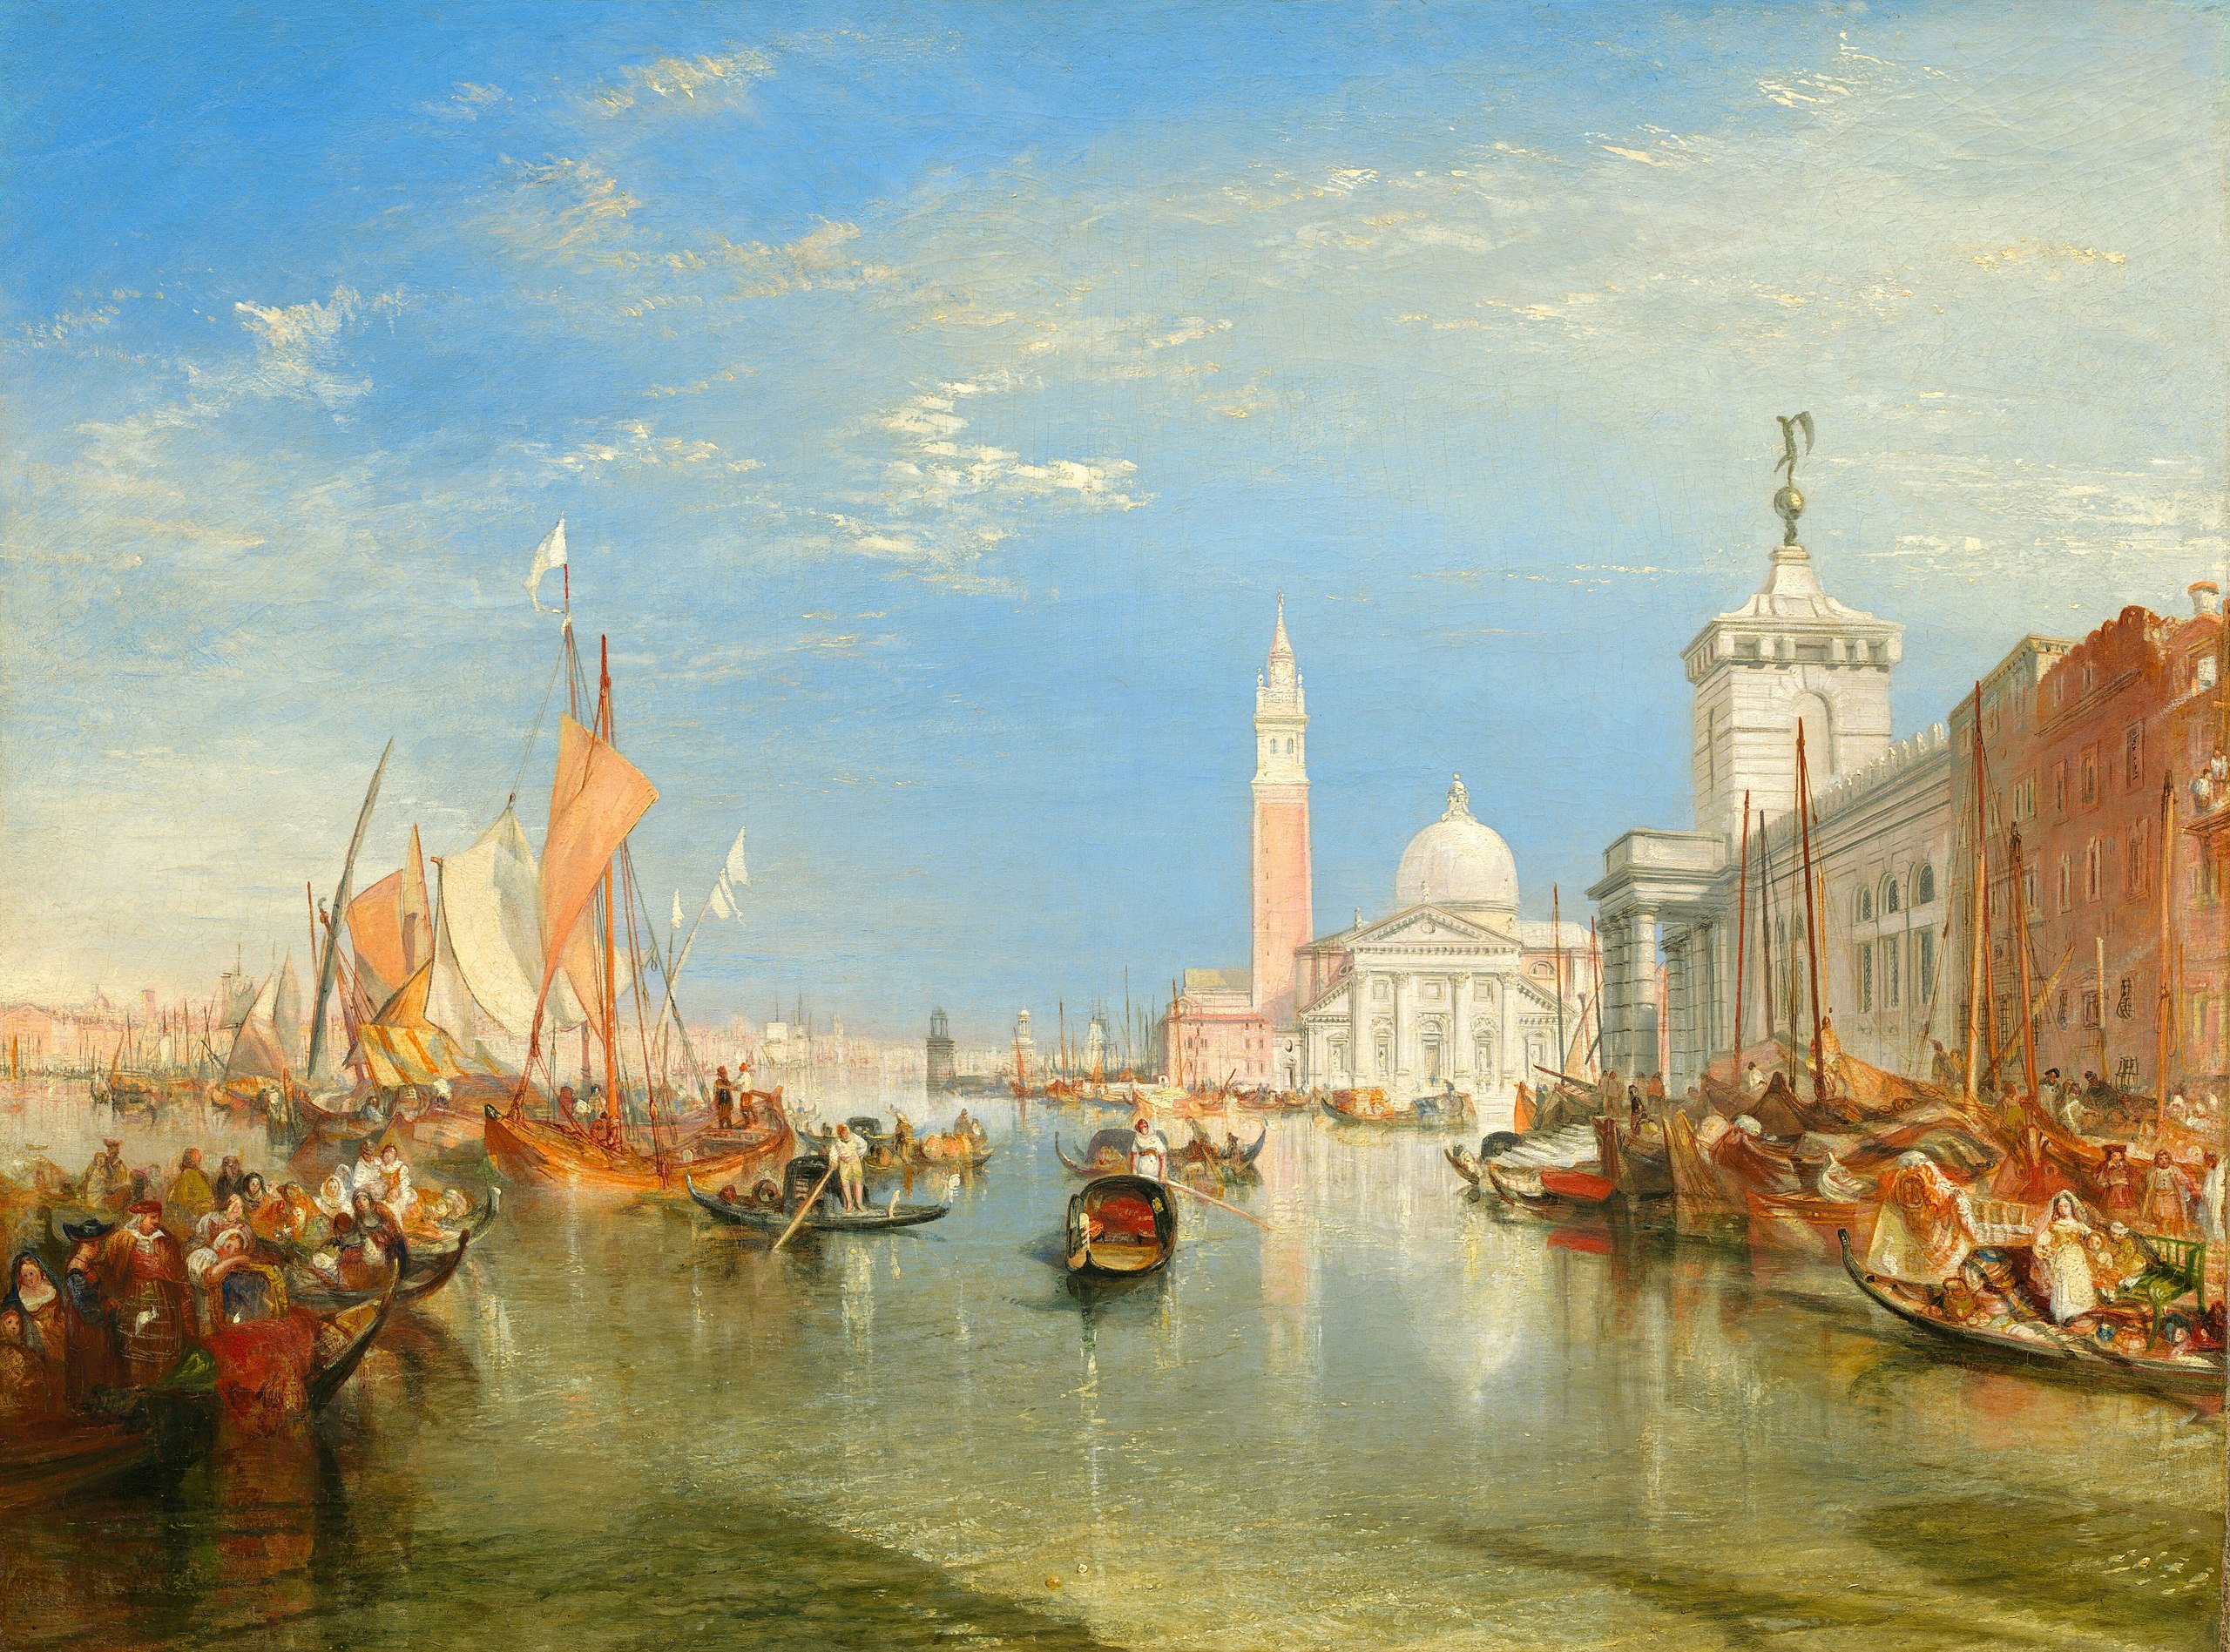 Venise : La Dogana et San Giorgio Maggiore by Joseph Mallord William Turner - 1834 - 91.5 x 122 cm 